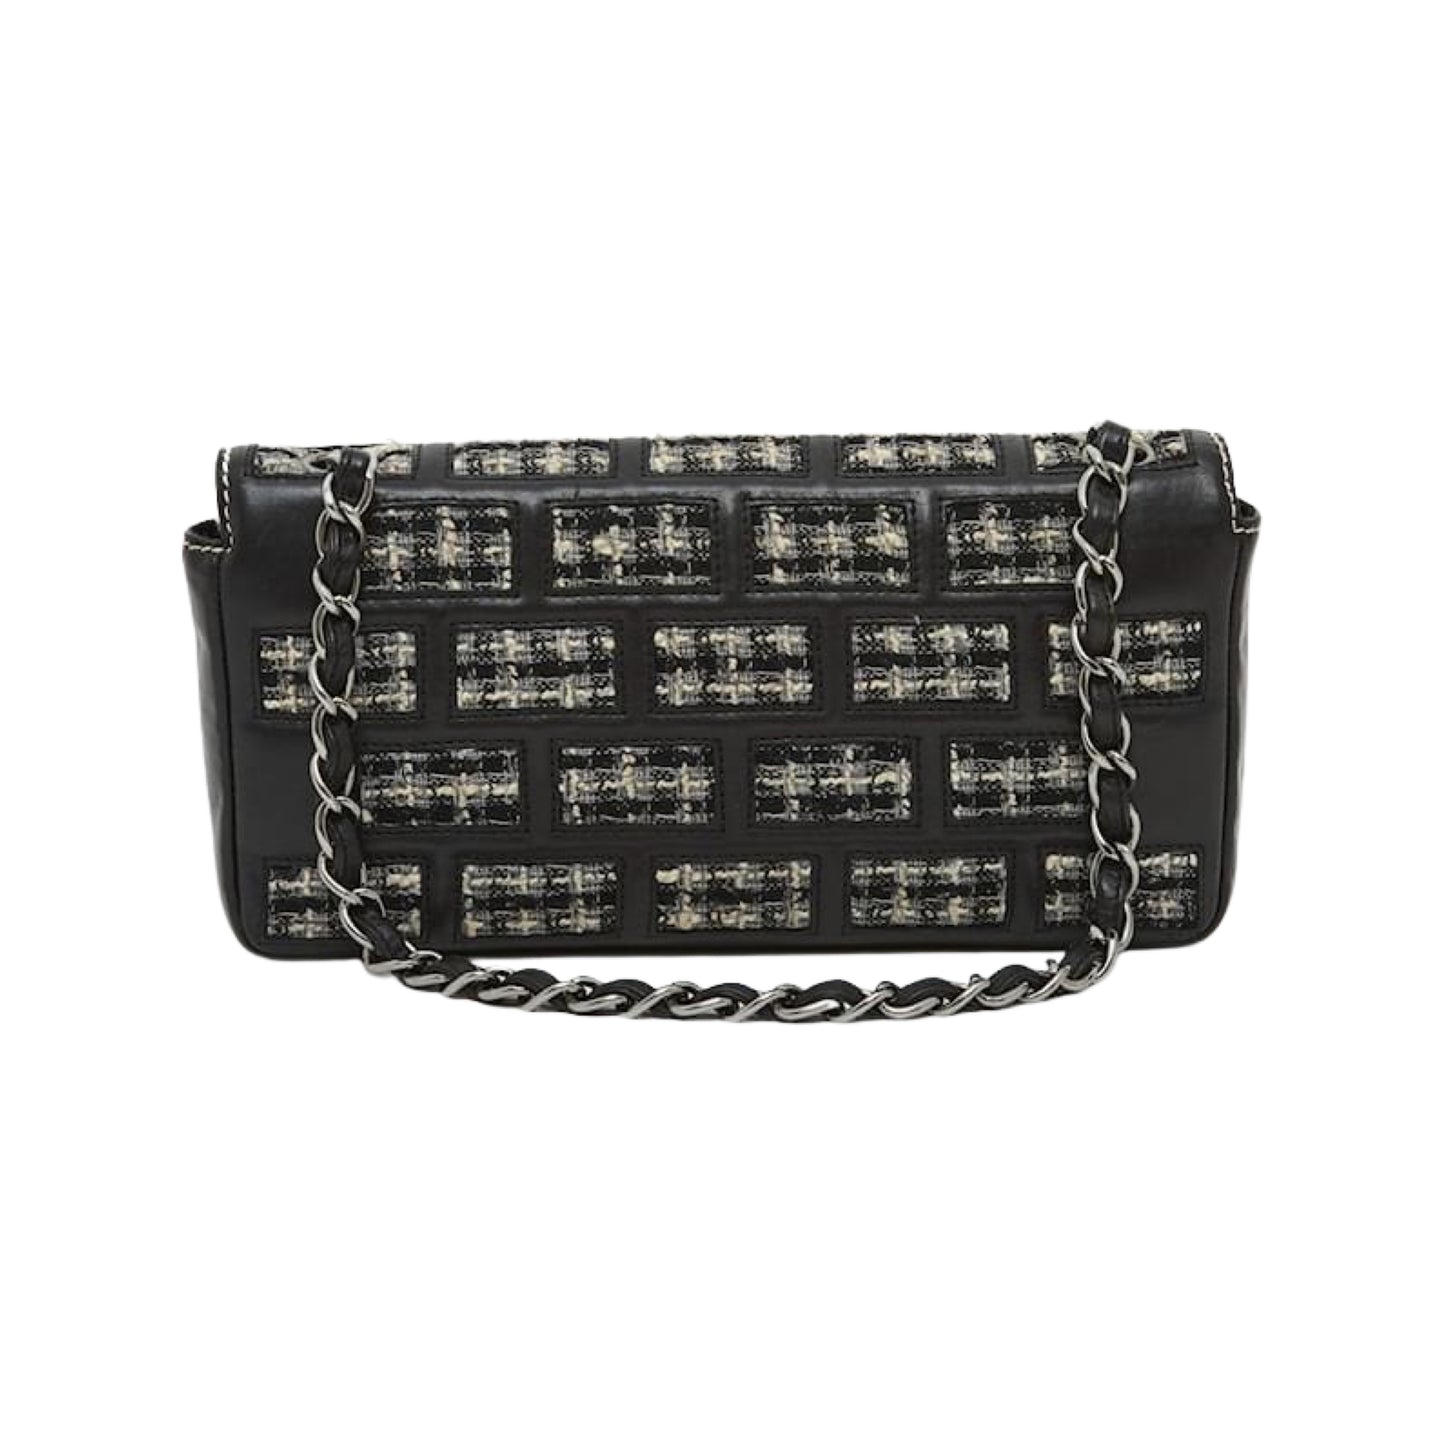 Chanel Brick Reissue 2.55 Tweed Flap Bag